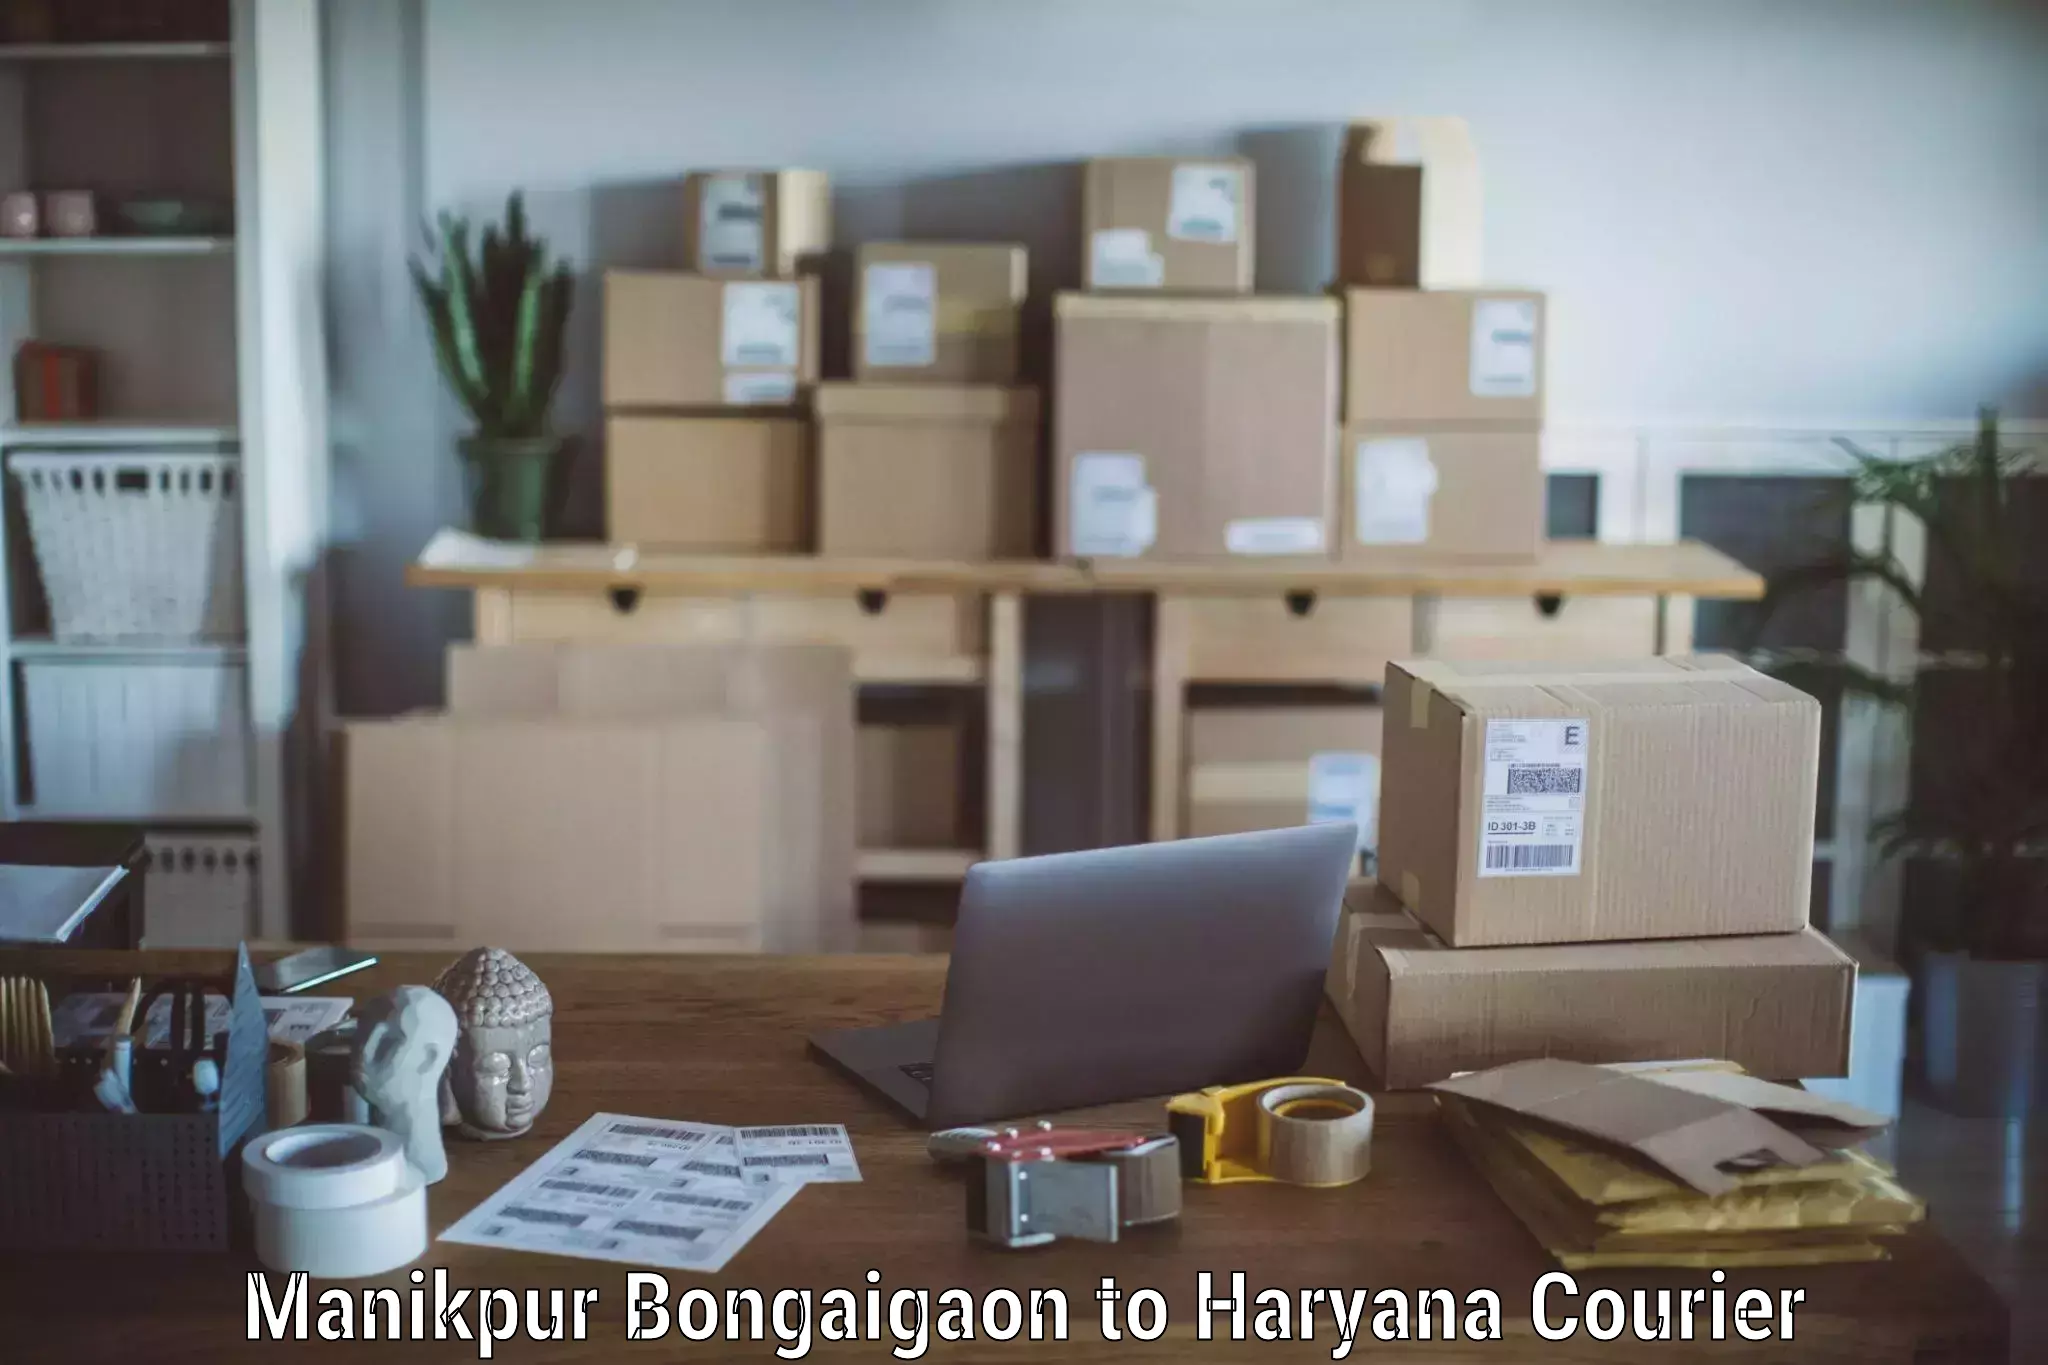 Expert furniture movers Manikpur Bongaigaon to Chaudhary Charan Singh Haryana Agricultural University Hisar